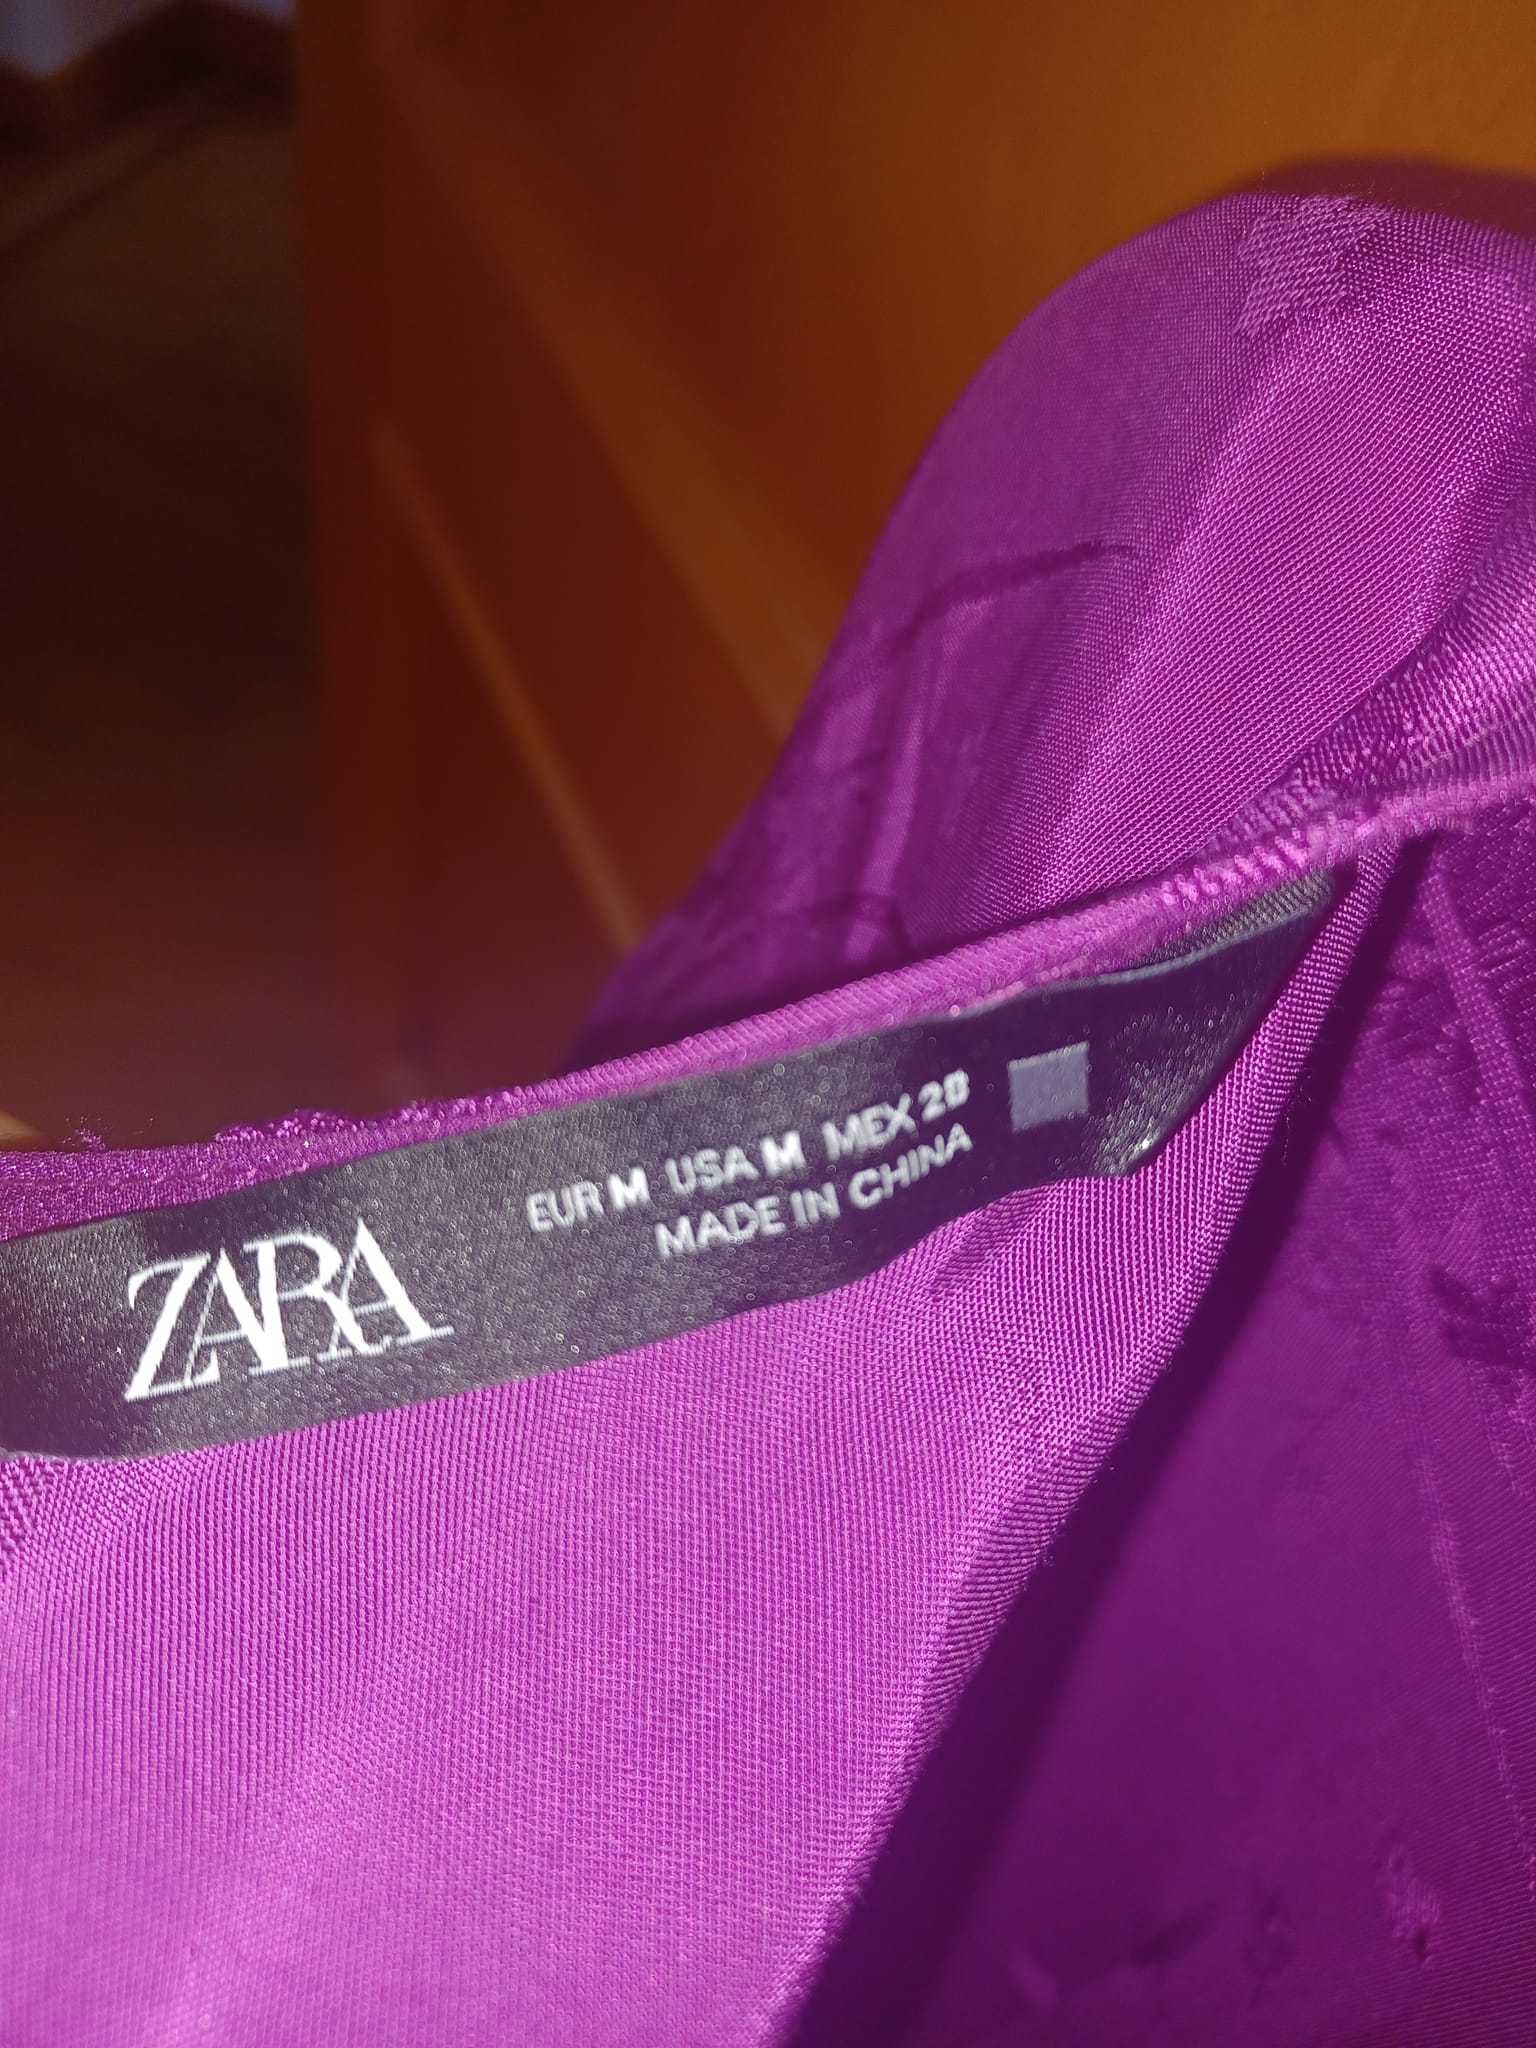 Vestido violeta da Zara novo